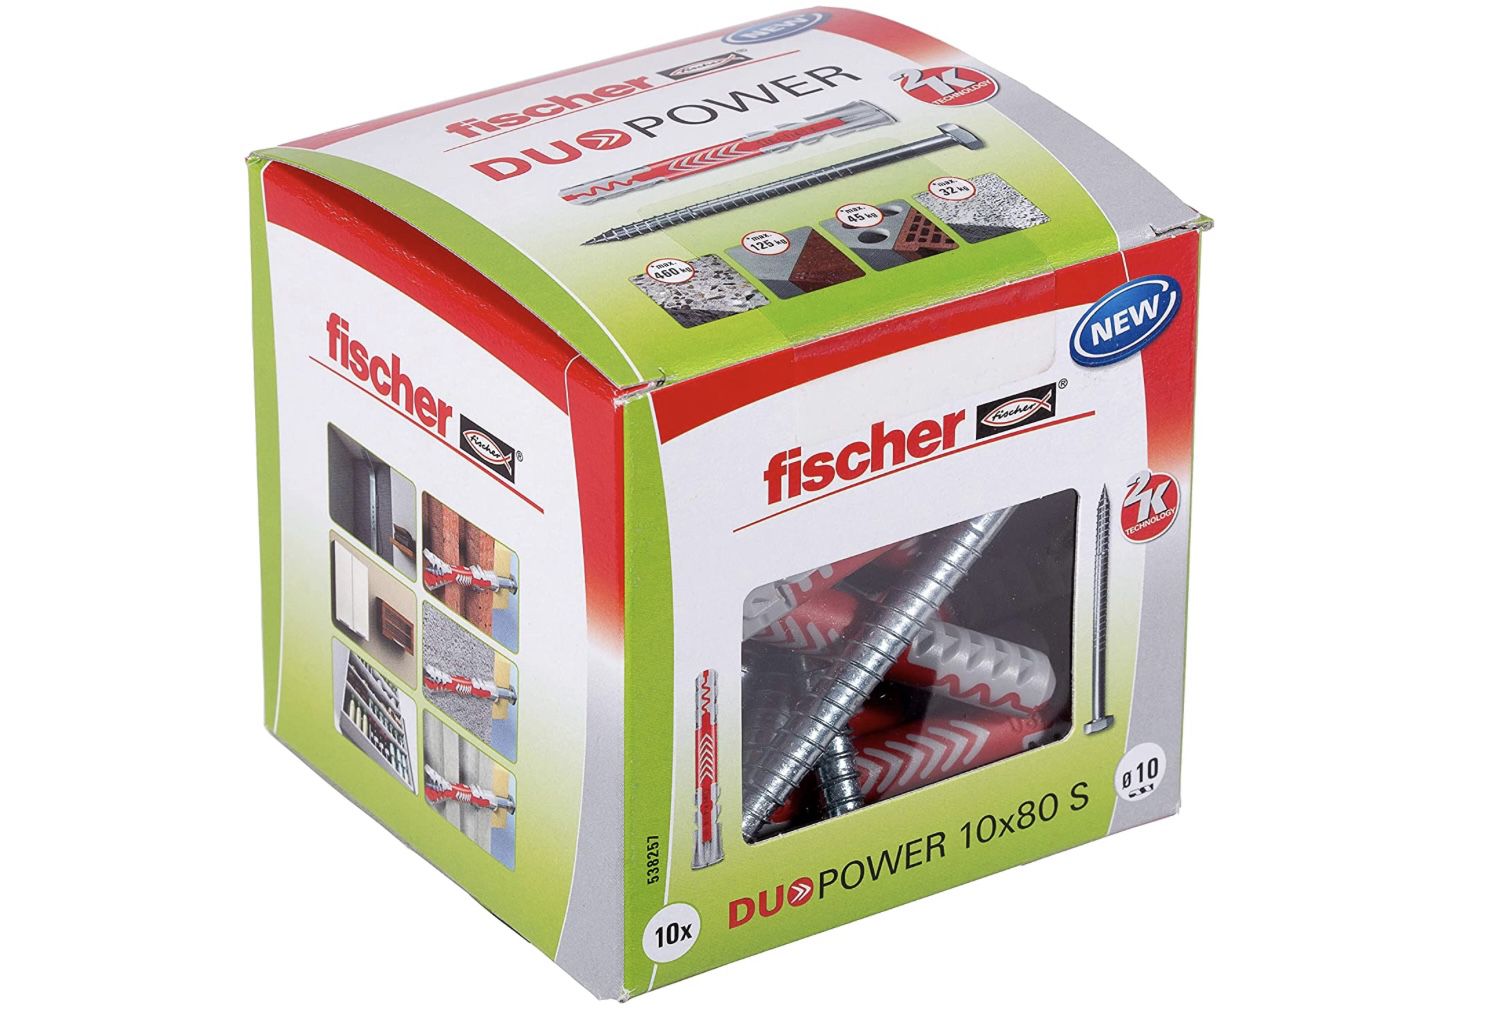 Fischer Dübel Set Duopower 10 x 80 mm ab 5,49€ (statt 12€)   Prime